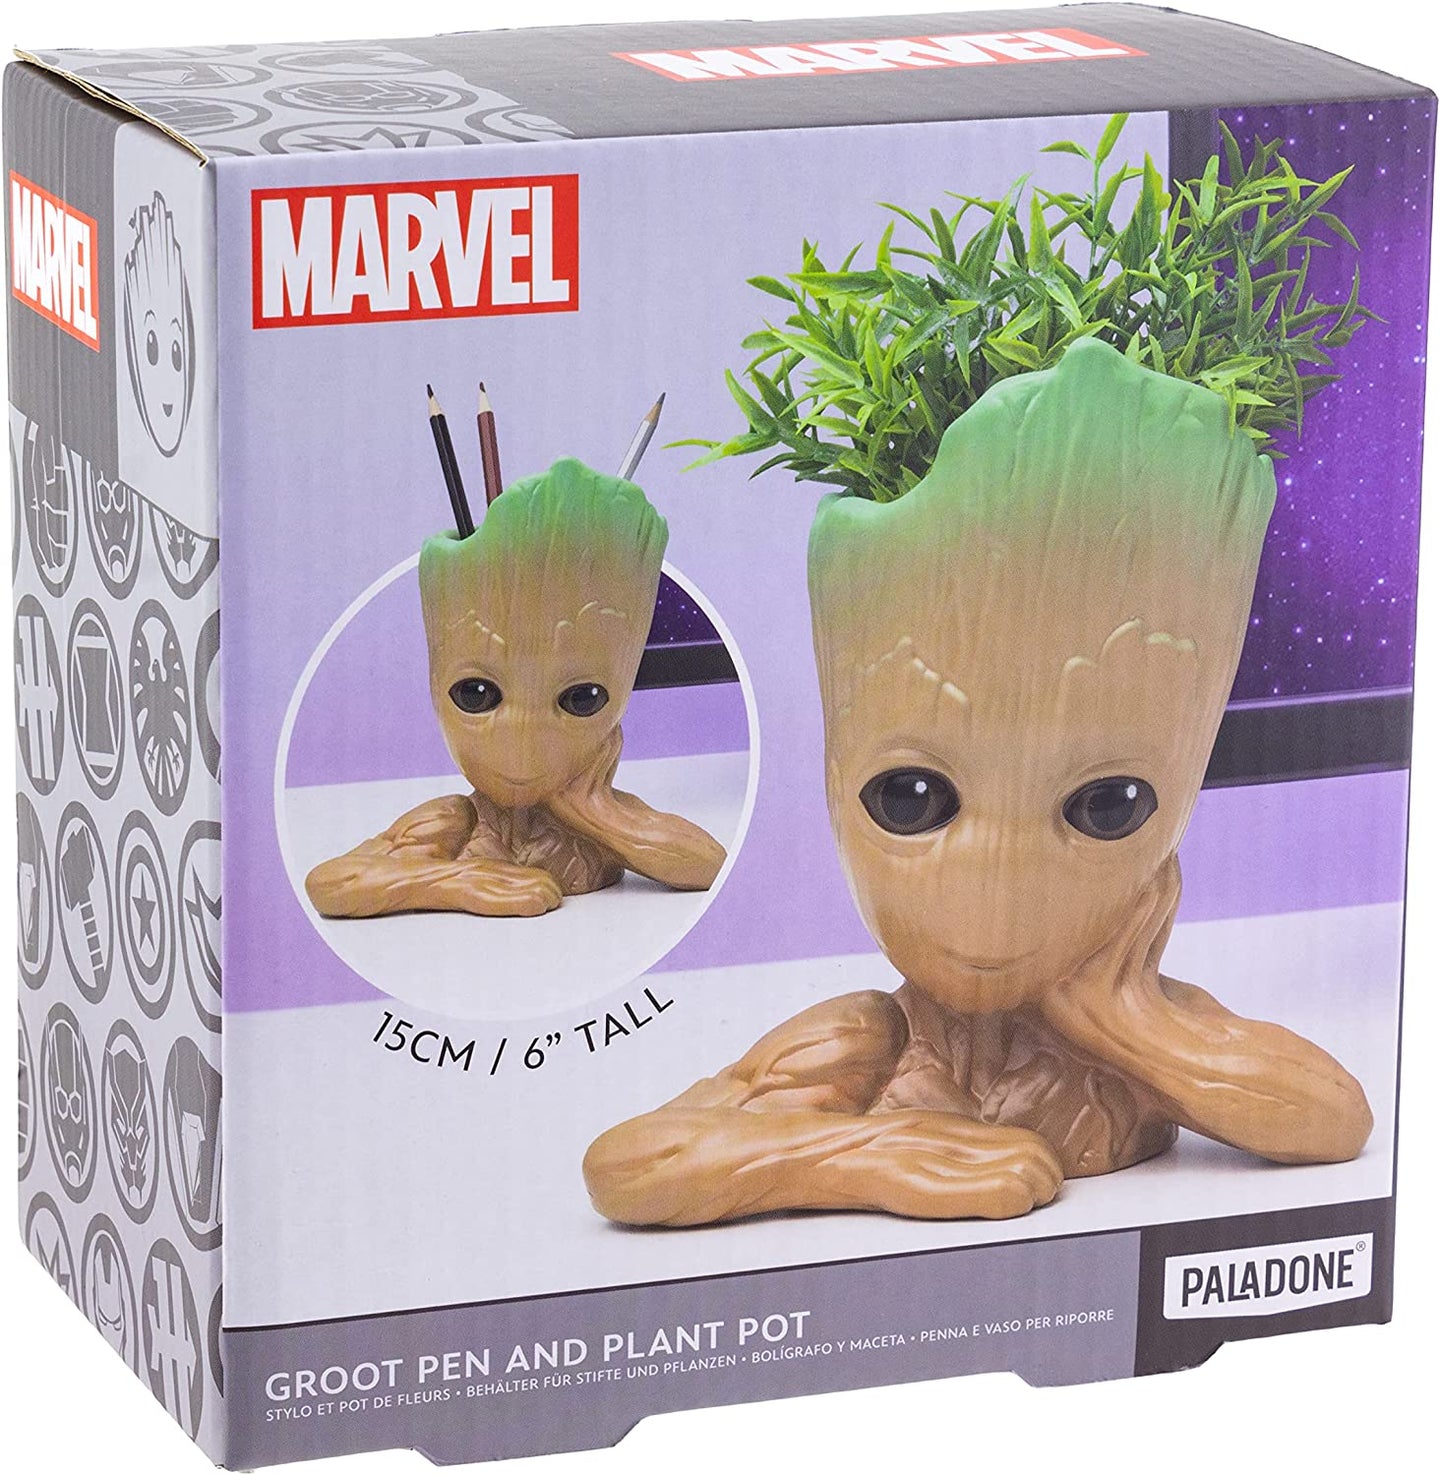 Groot Plant Pot Pen Holder Marvel Packaging Box